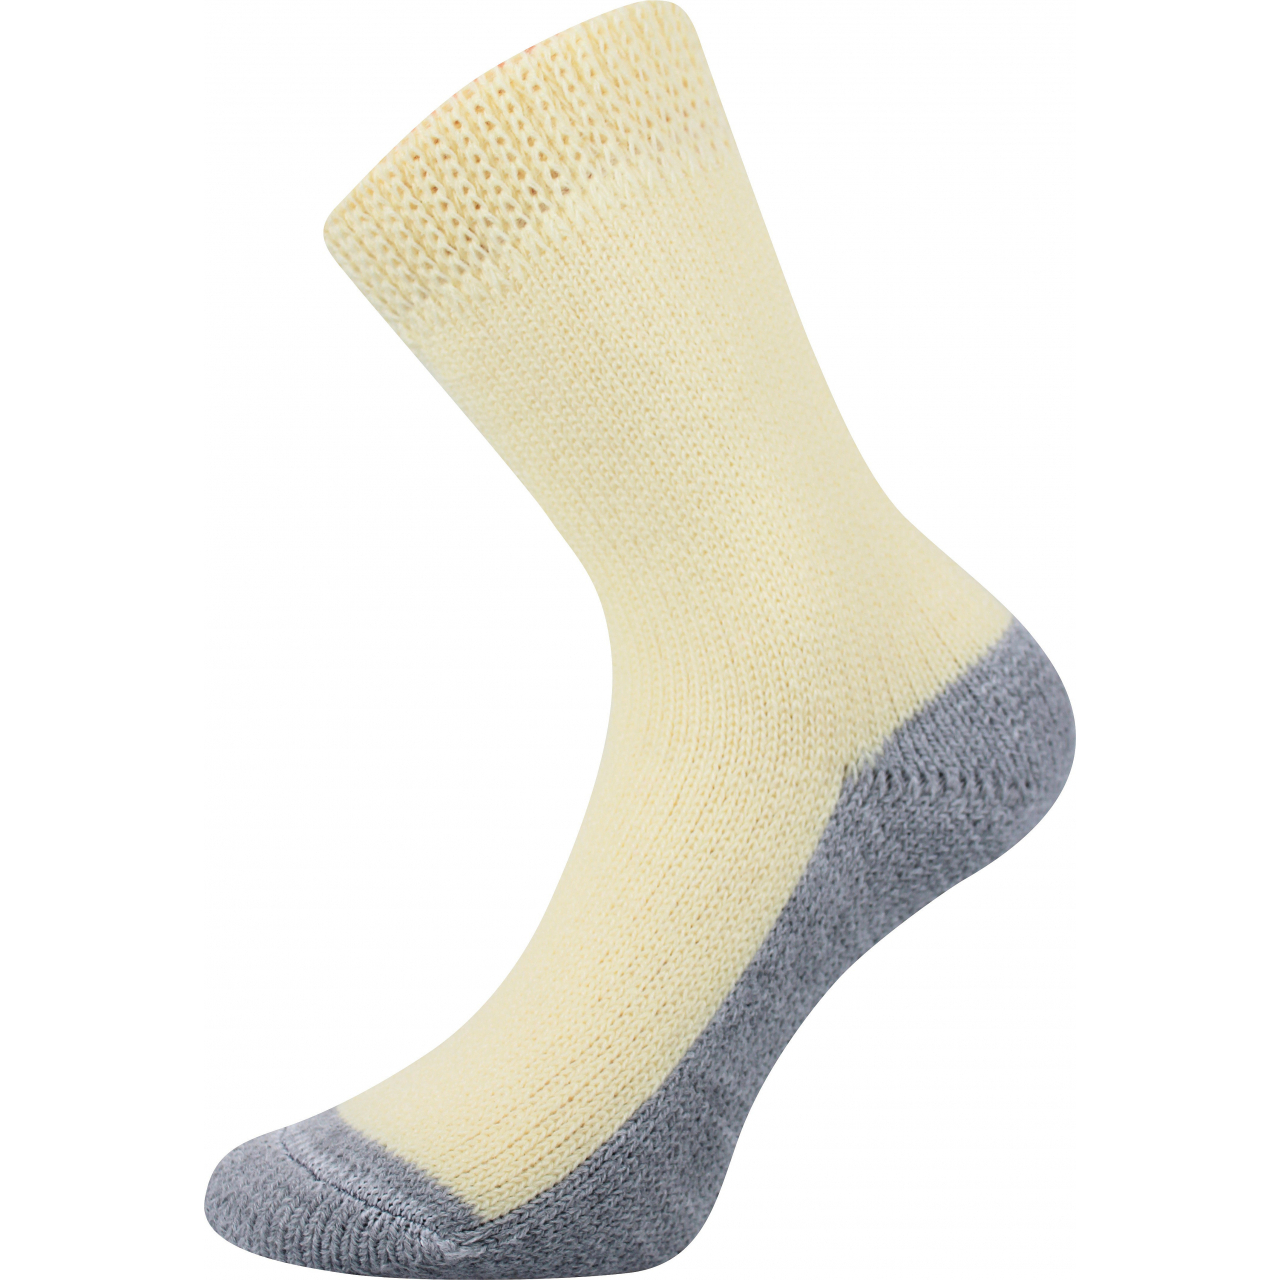 Ponožky unisex Boma Spací - žluté, 43-46